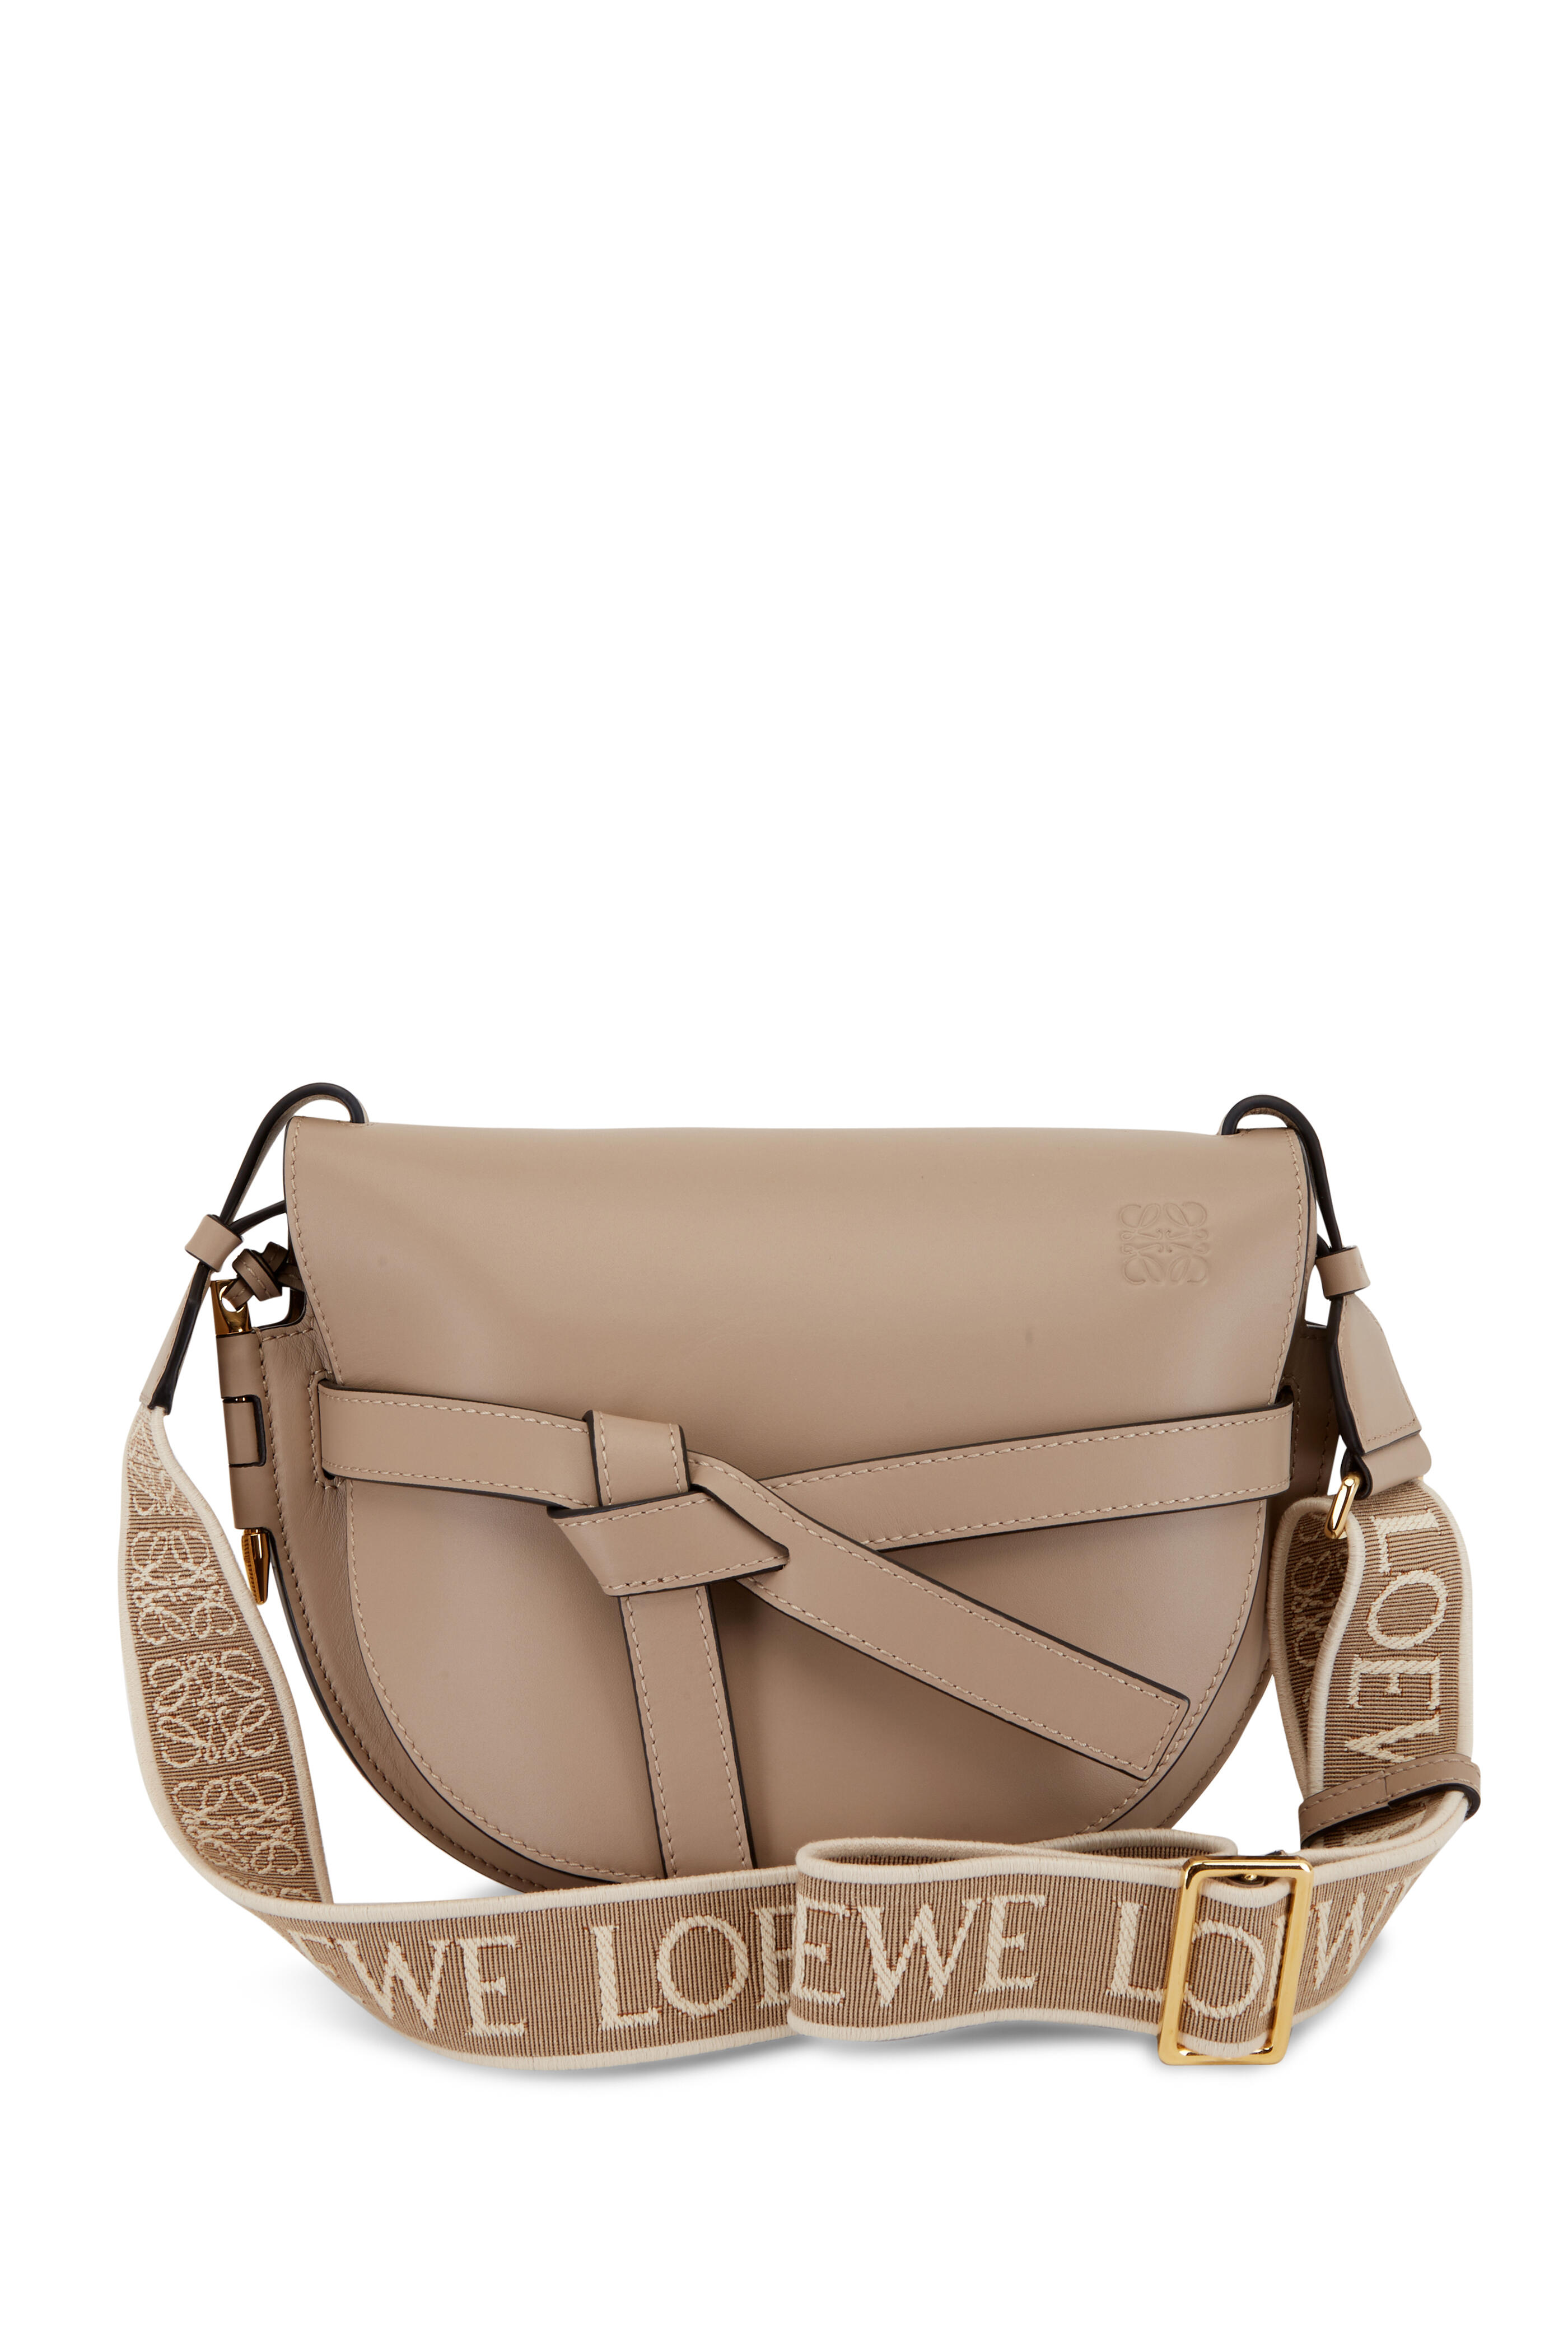 Loewe Gate Top Handle Mini Bag in Light Oat & Soft White